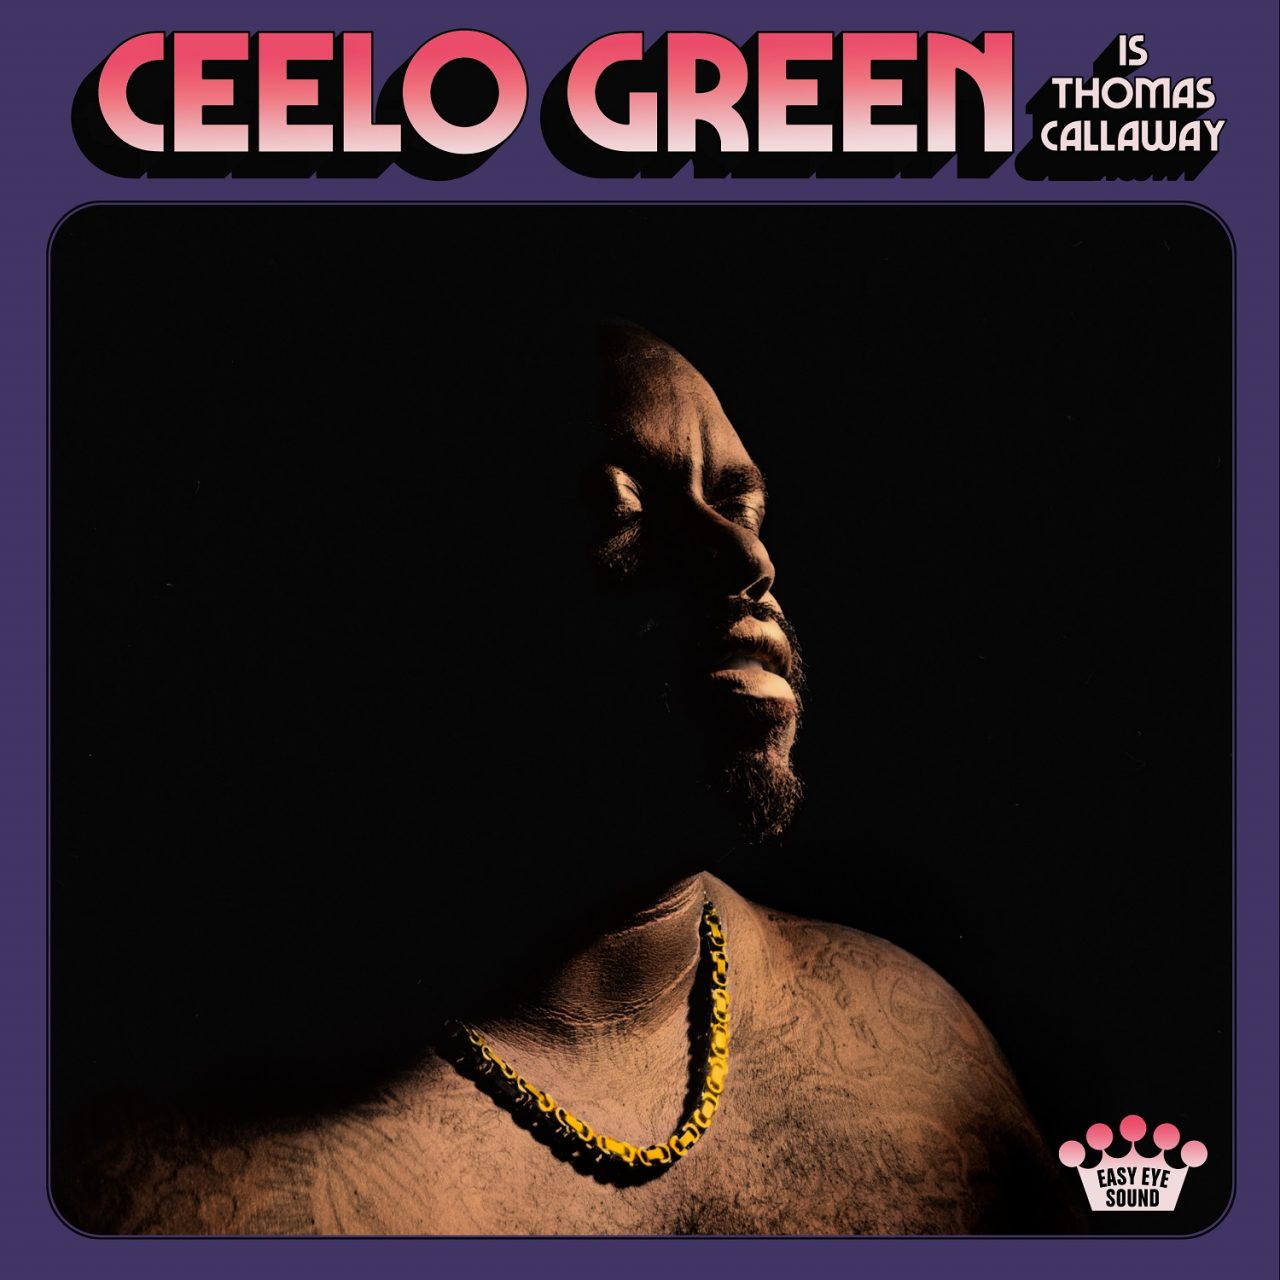 Das Album "CeeLo Green is Thomas Callaway" von CeeLo Green